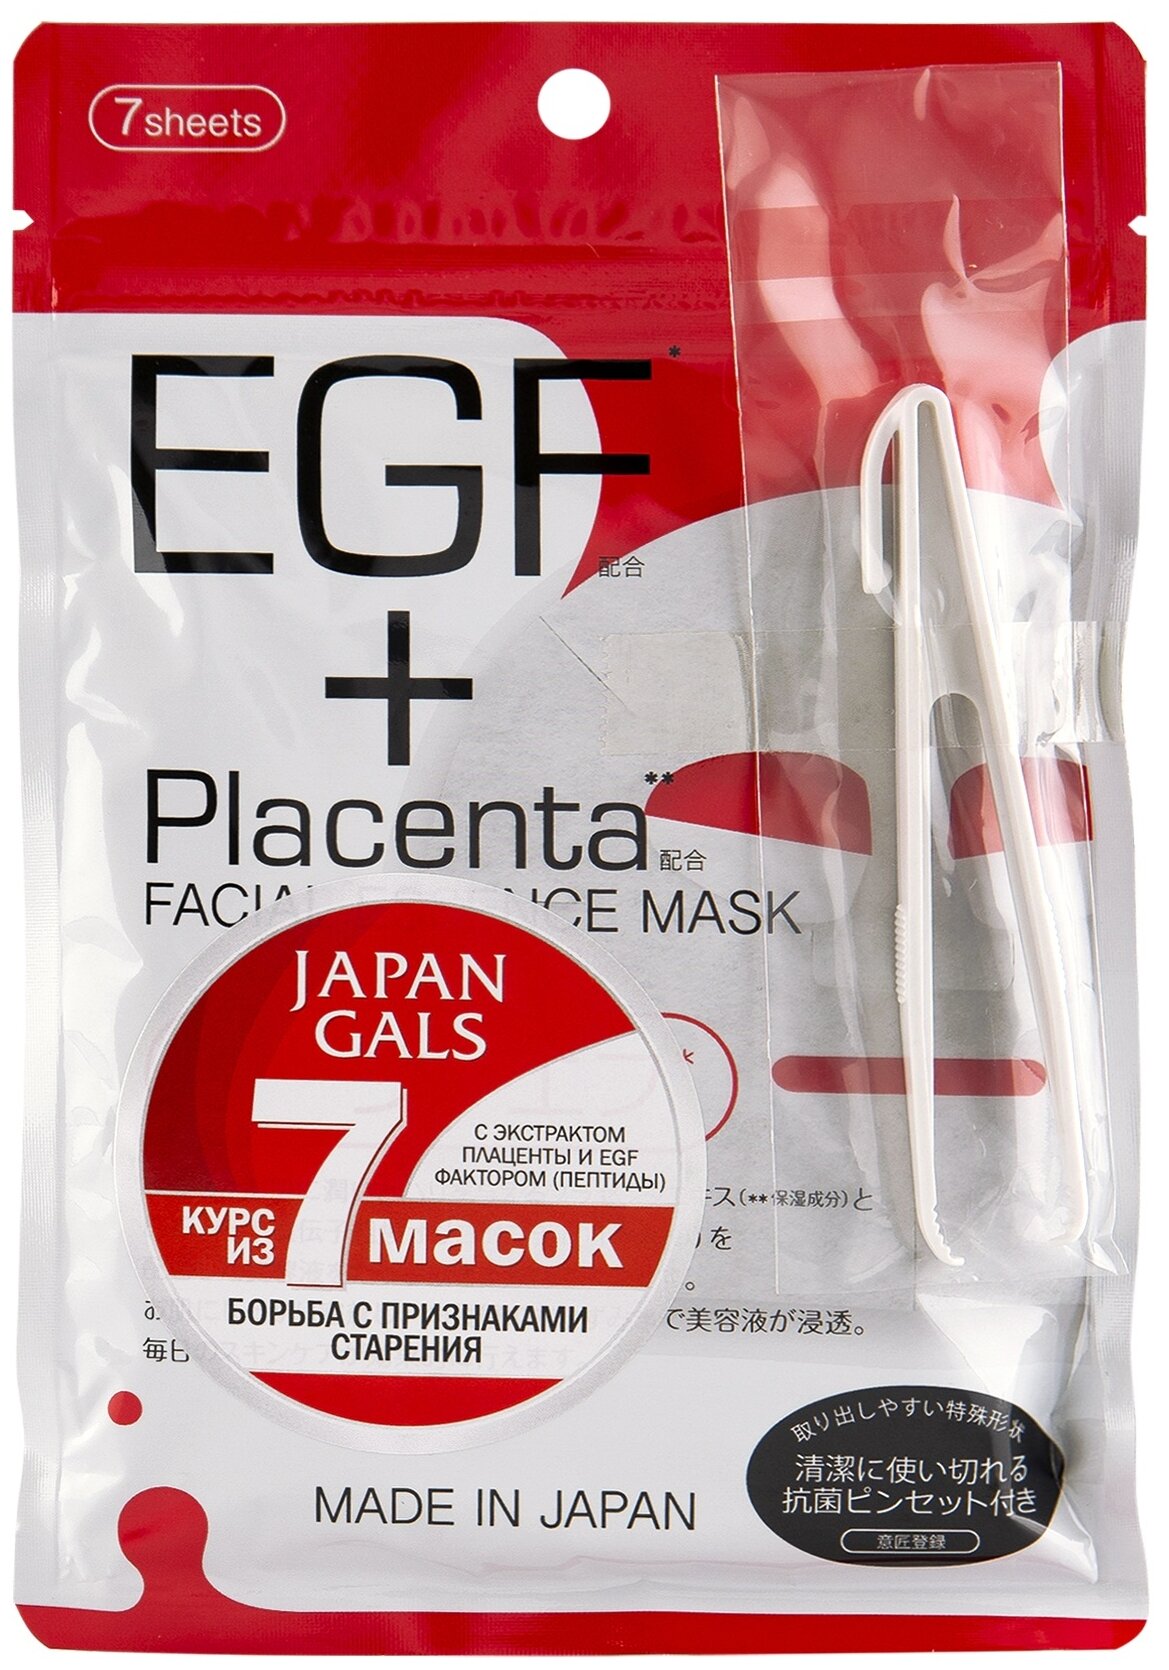 Japan Gals Маска с плацентой и EGF фактором Facial Essence Mask 7 шт .